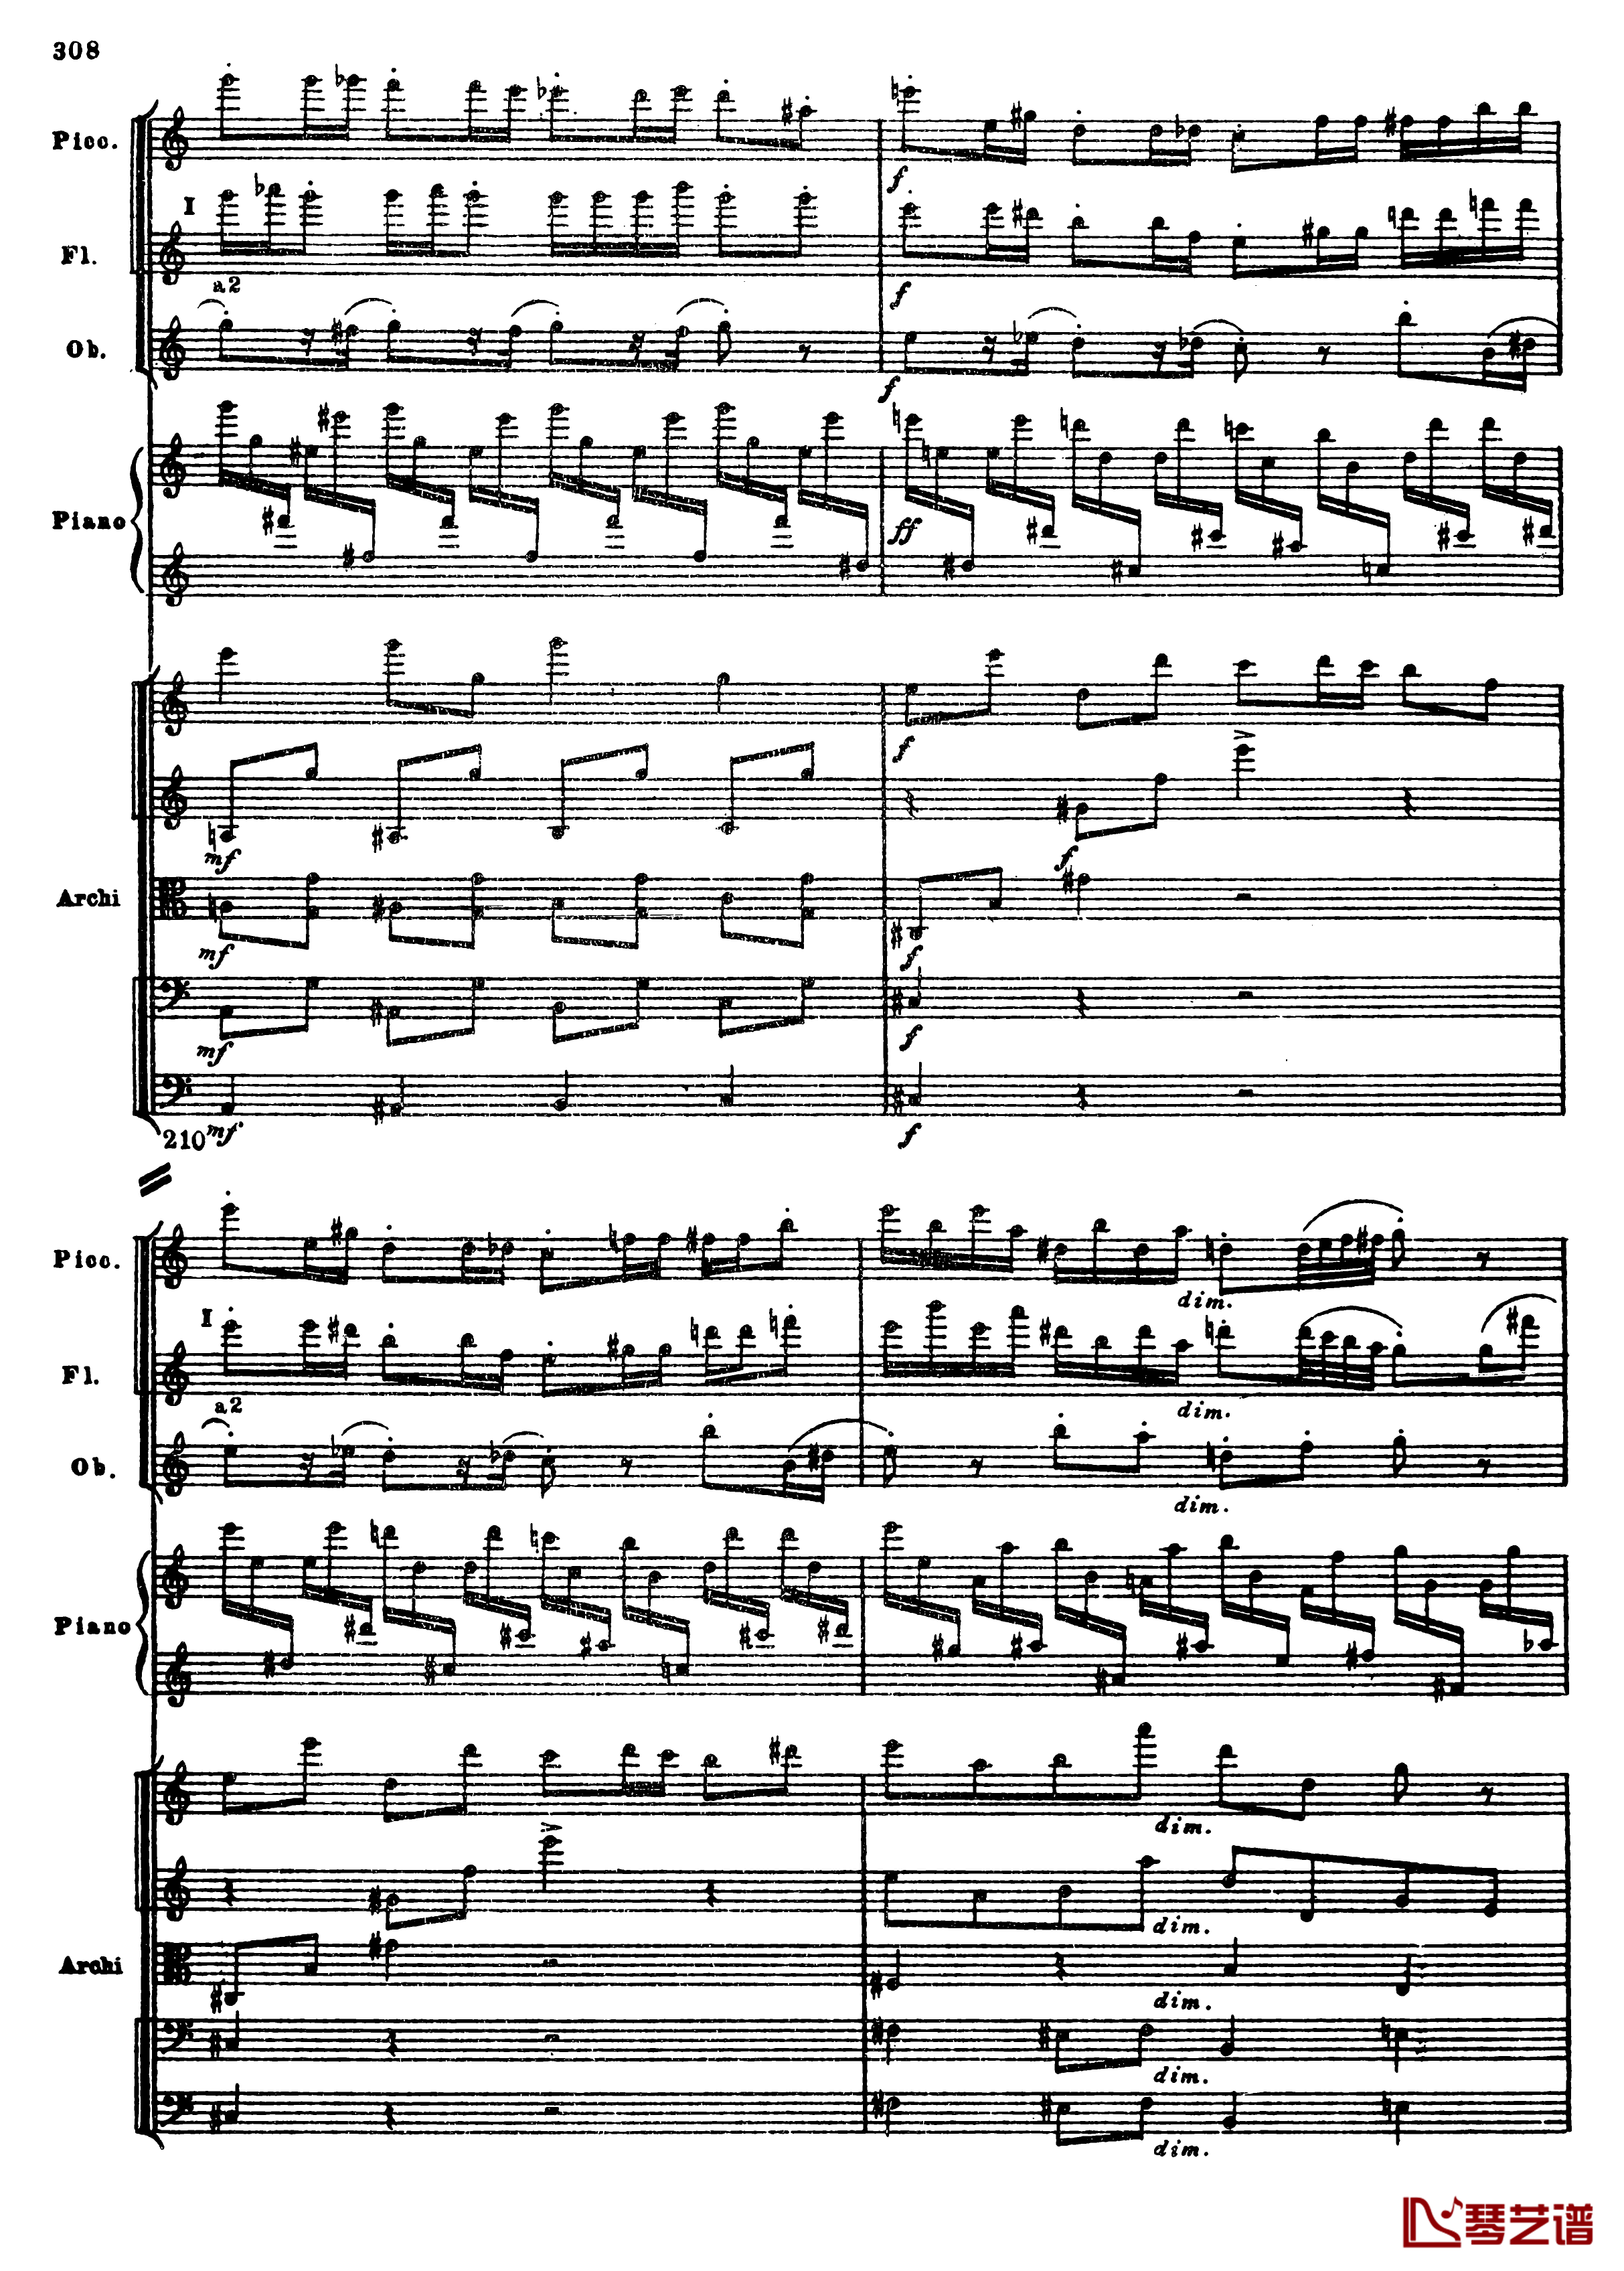 普罗科菲耶夫第三钢琴协奏曲钢琴谱-总谱-普罗科非耶夫40